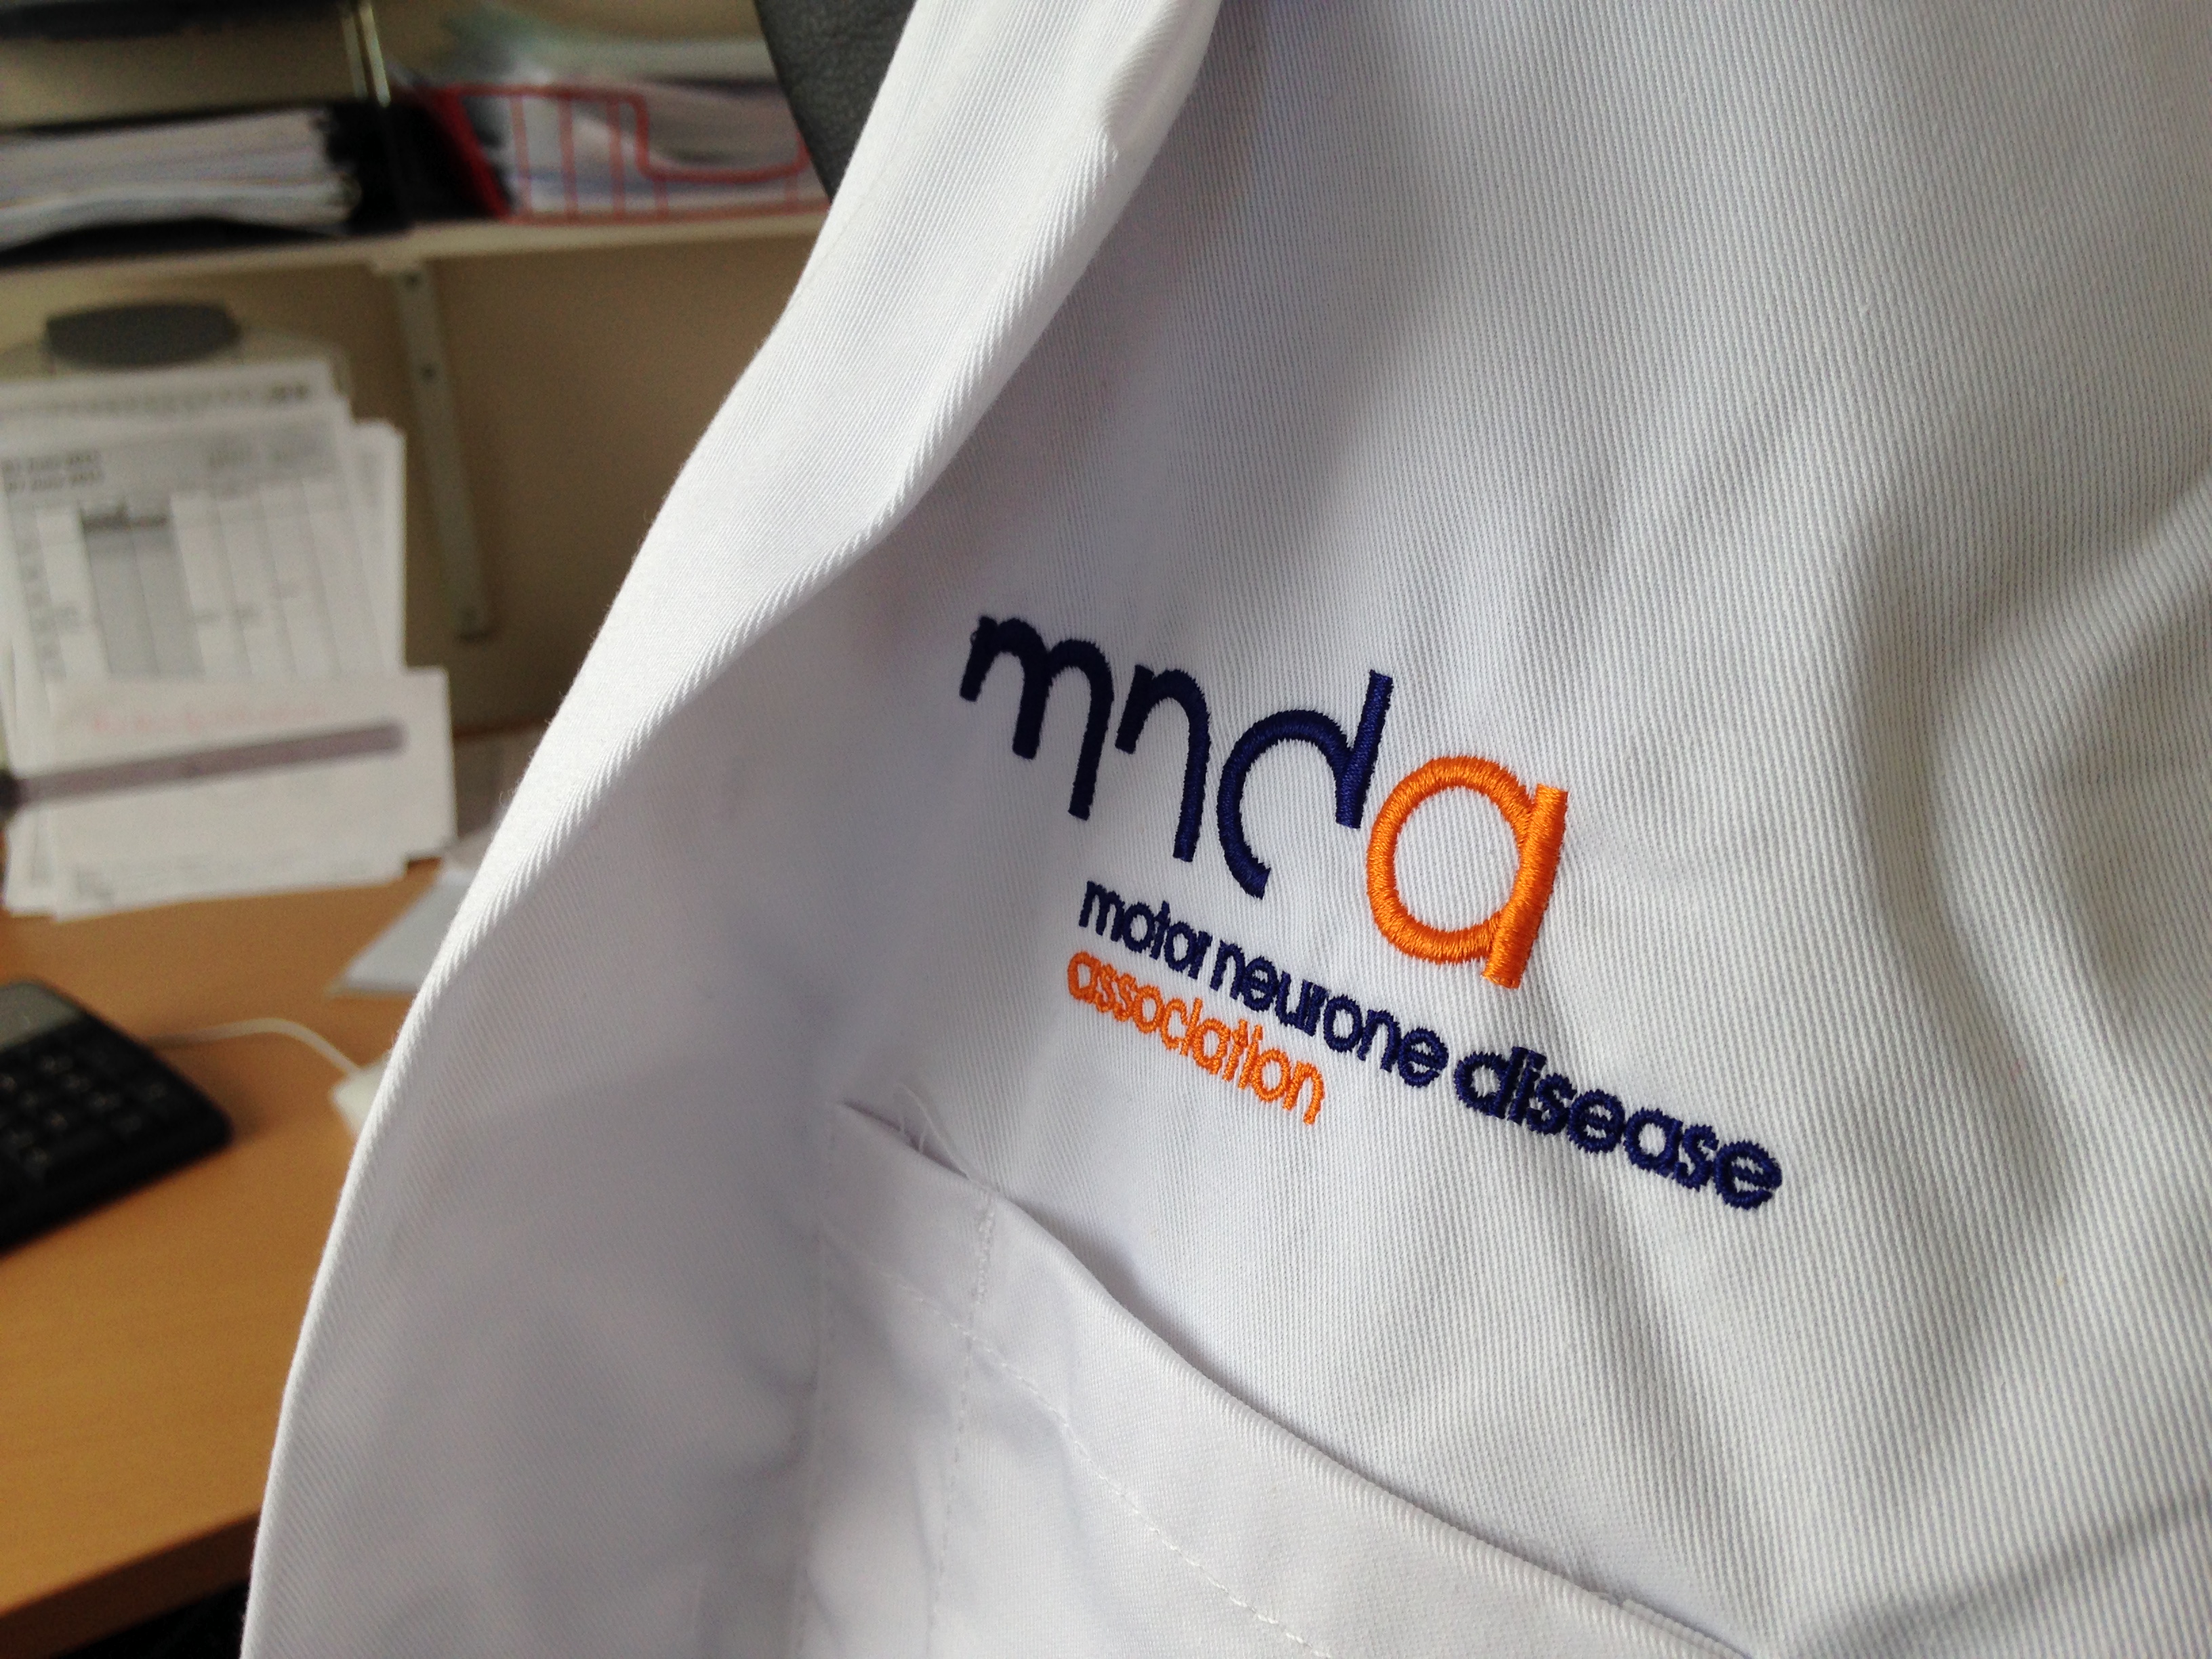 MND Association branded lab coat